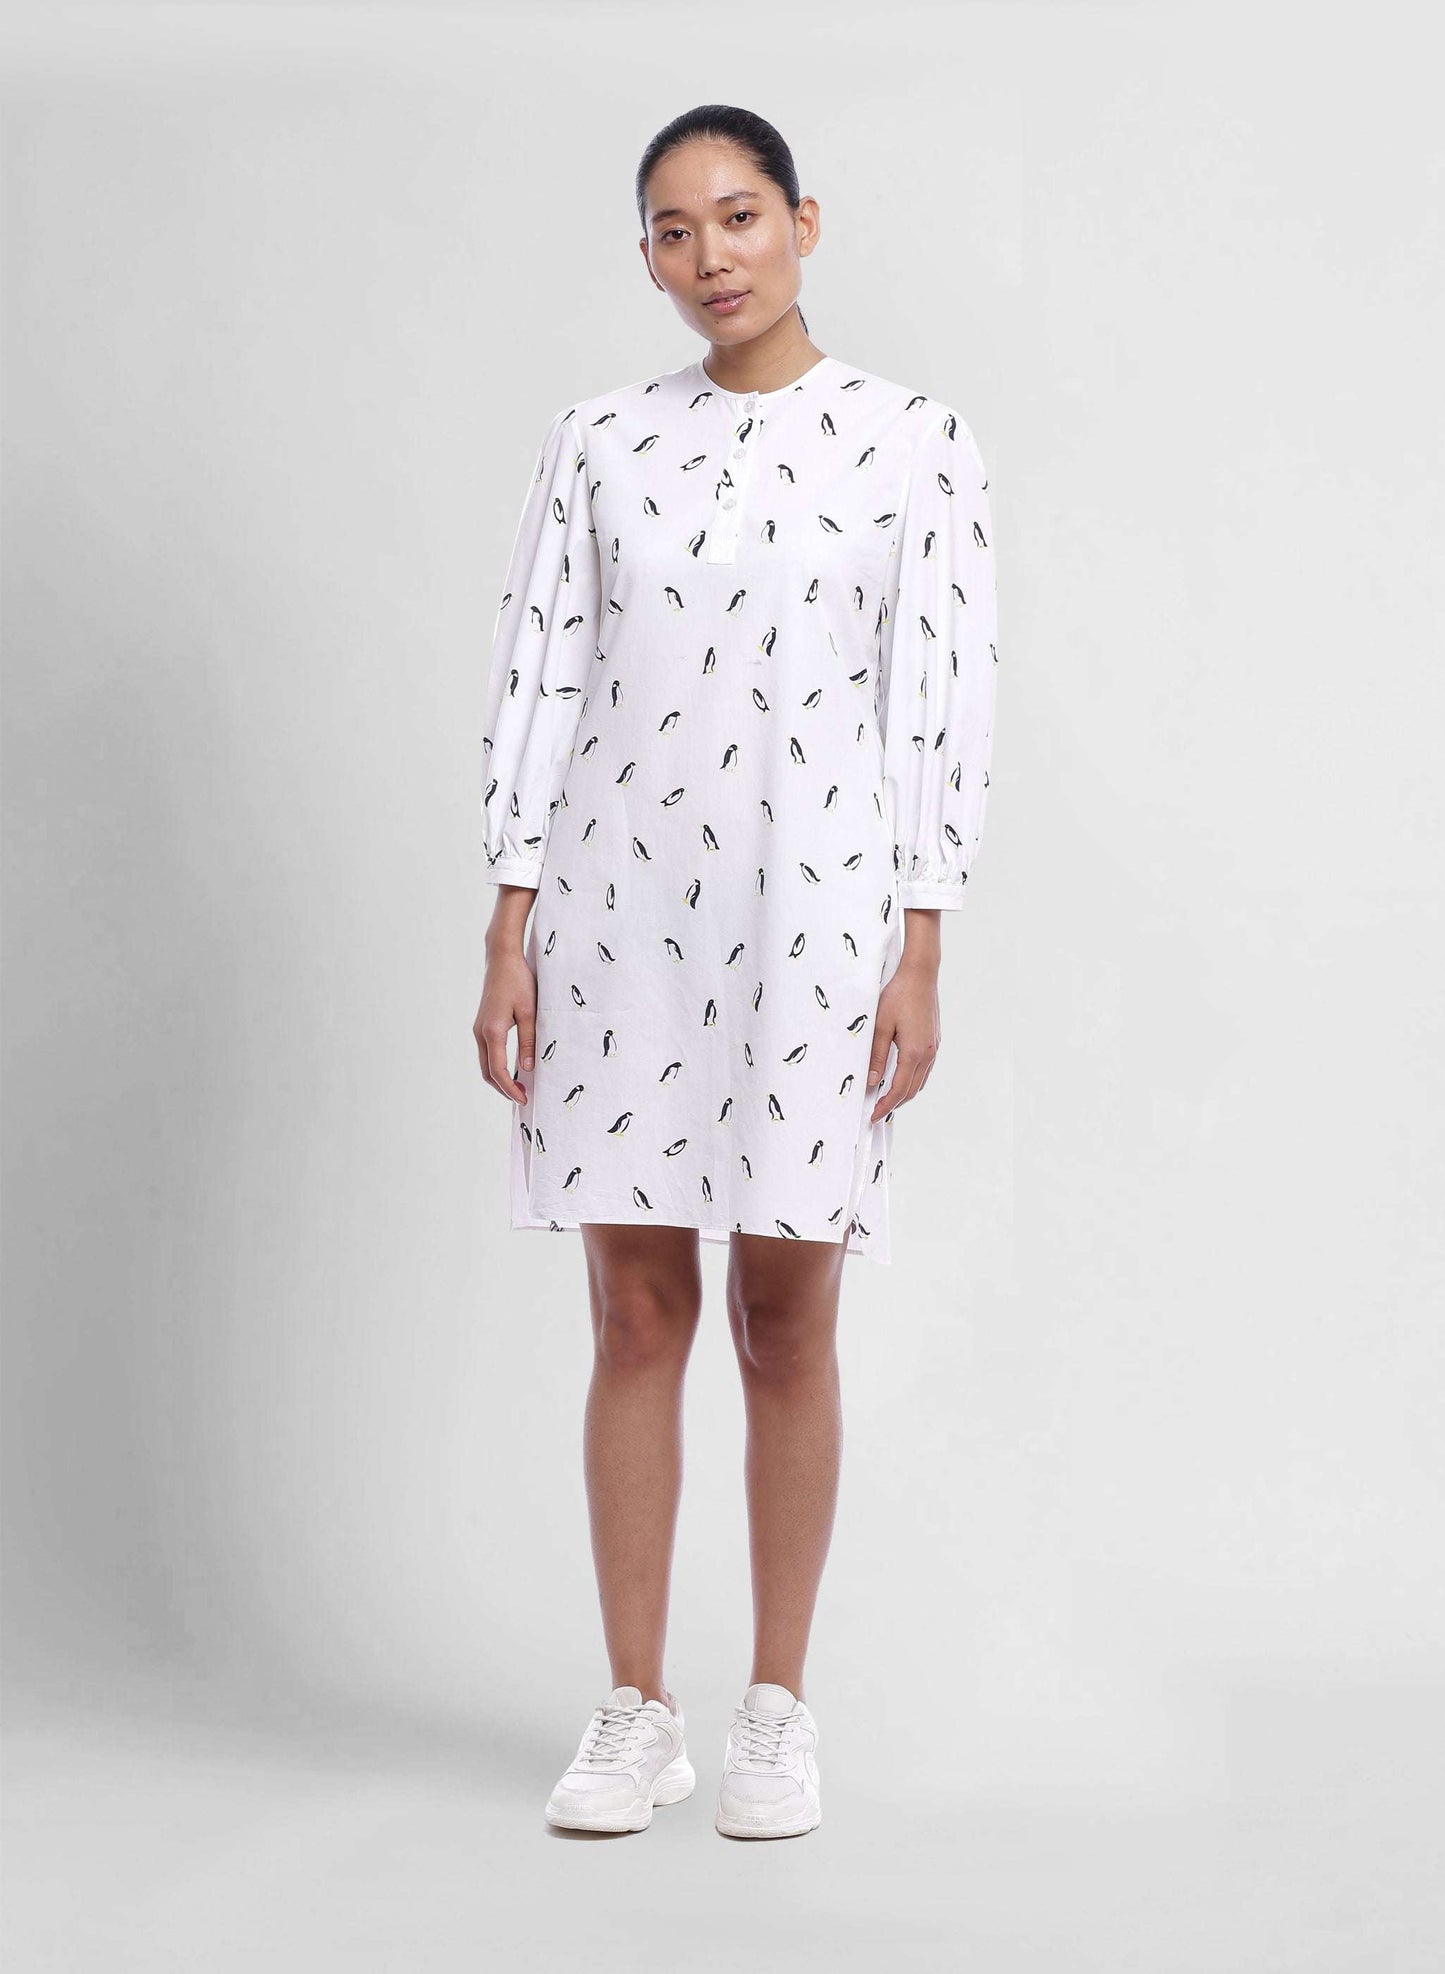 Penguin Dress - Genes online store 2020